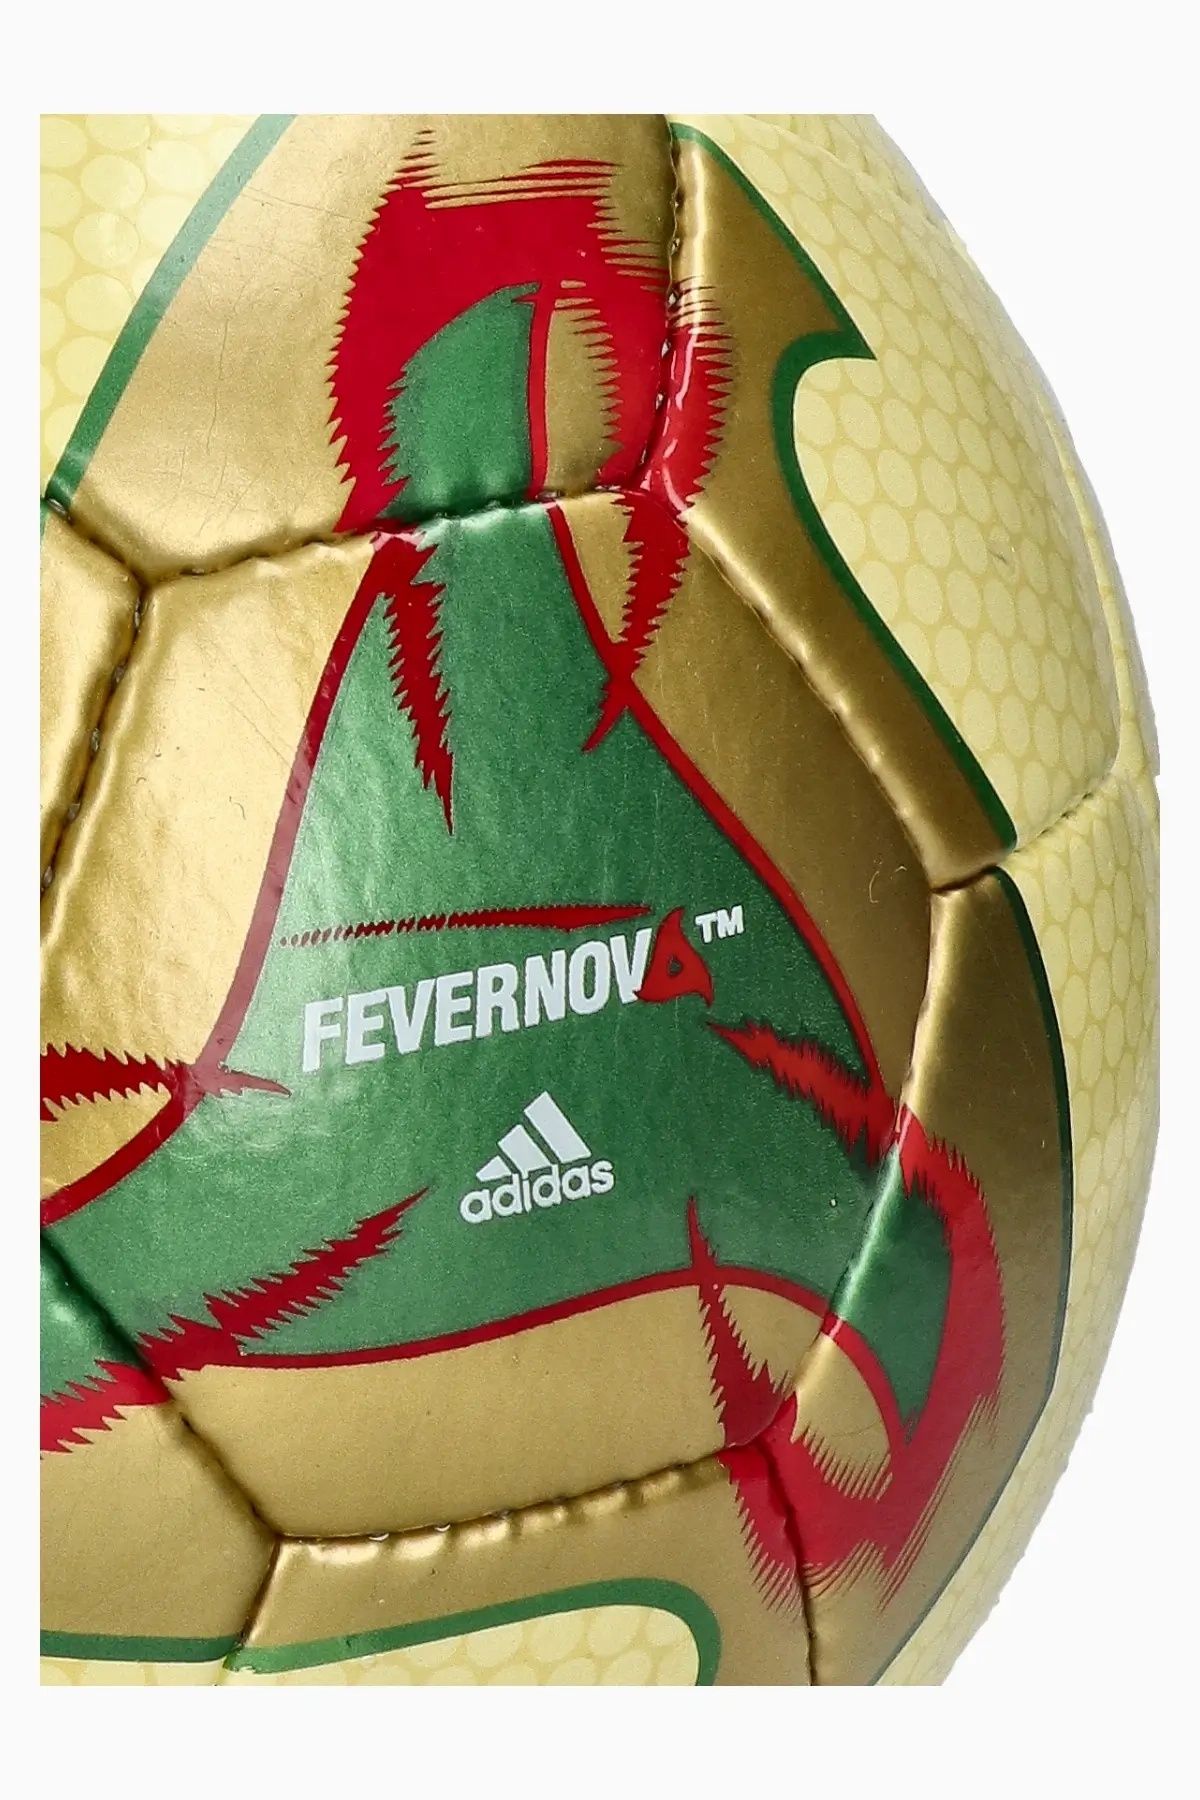 Minge adidas Fevernova Futsal